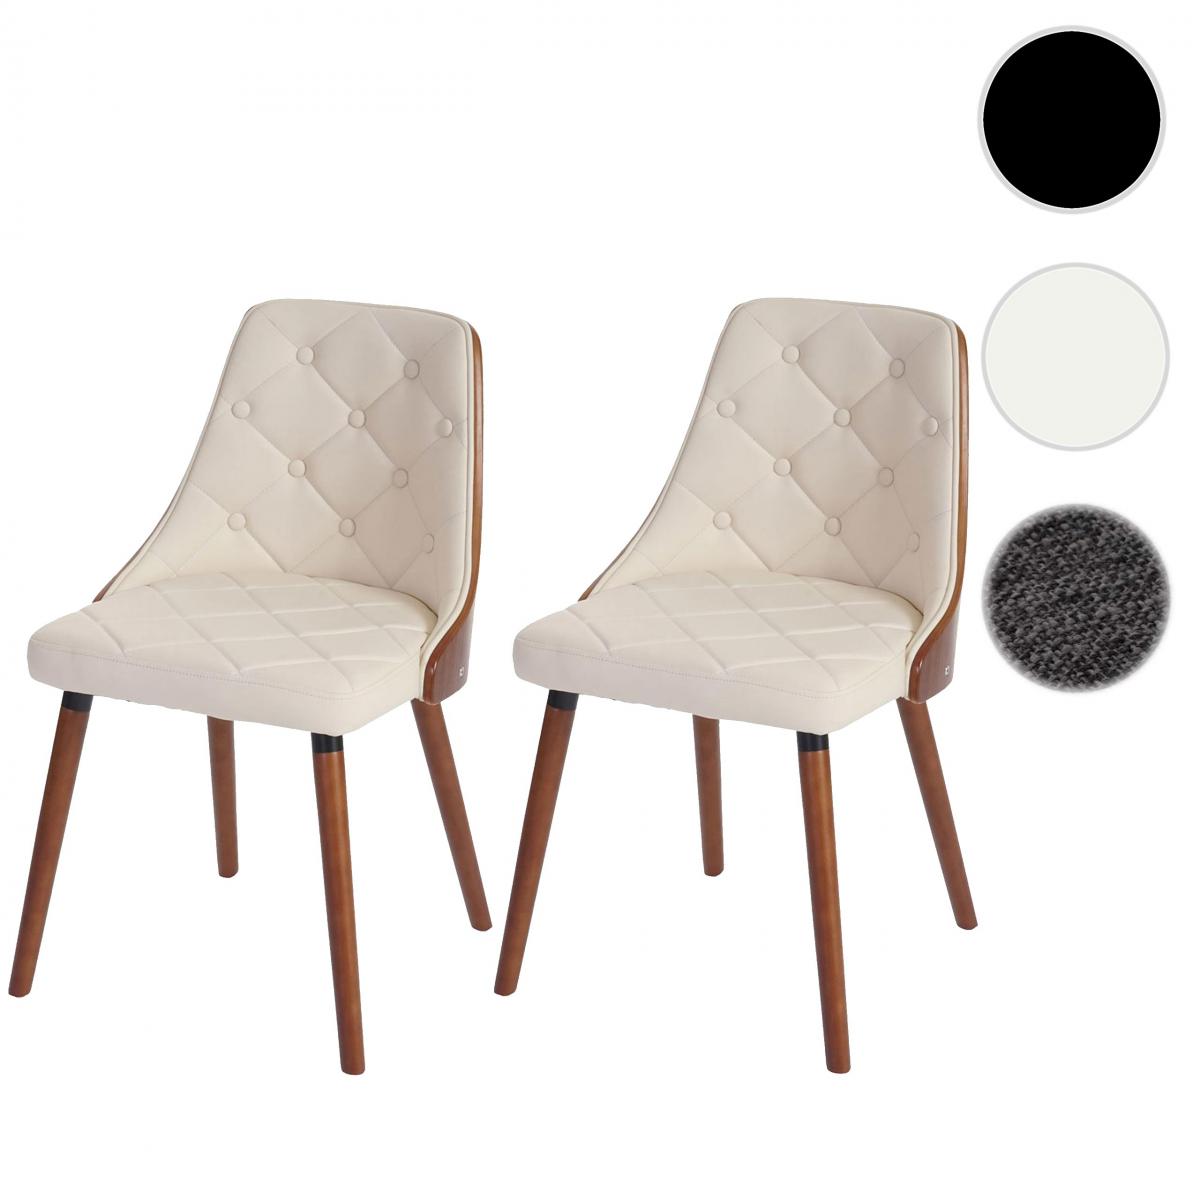 Mendler - 2x chaise de salle à manger Osijek, fauteuil, aspect noix, bois cintré ~ similicuir, crème - Chaises